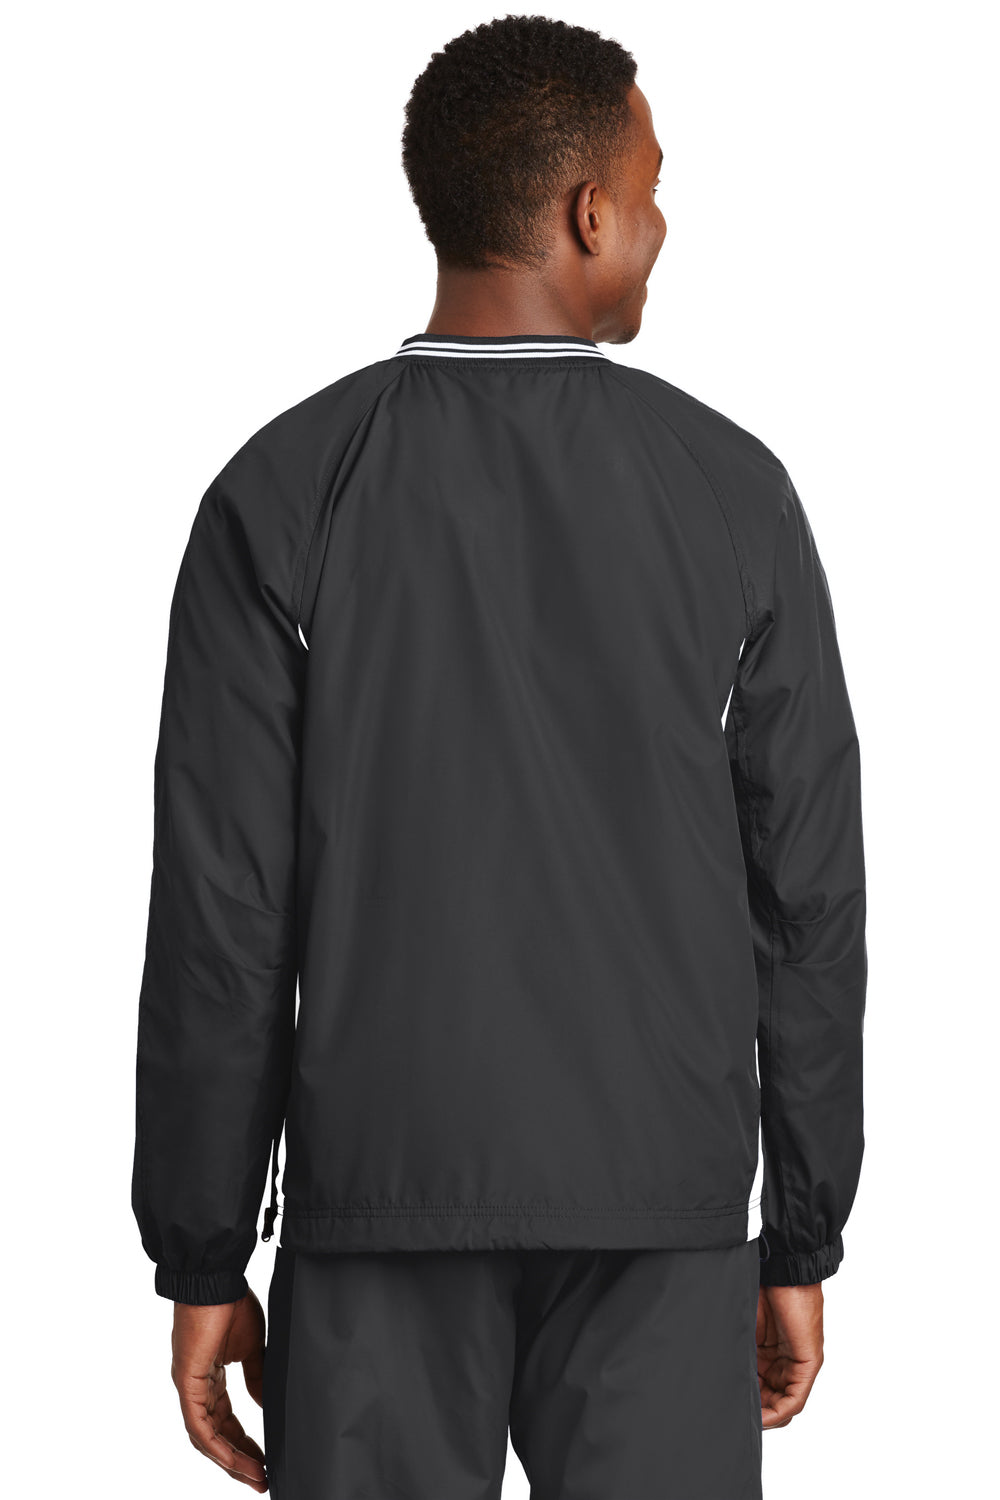 Sport-Tek JST62 Mens Wind & Water Resistant V-Neck Jacket Graphite Grey/White Back